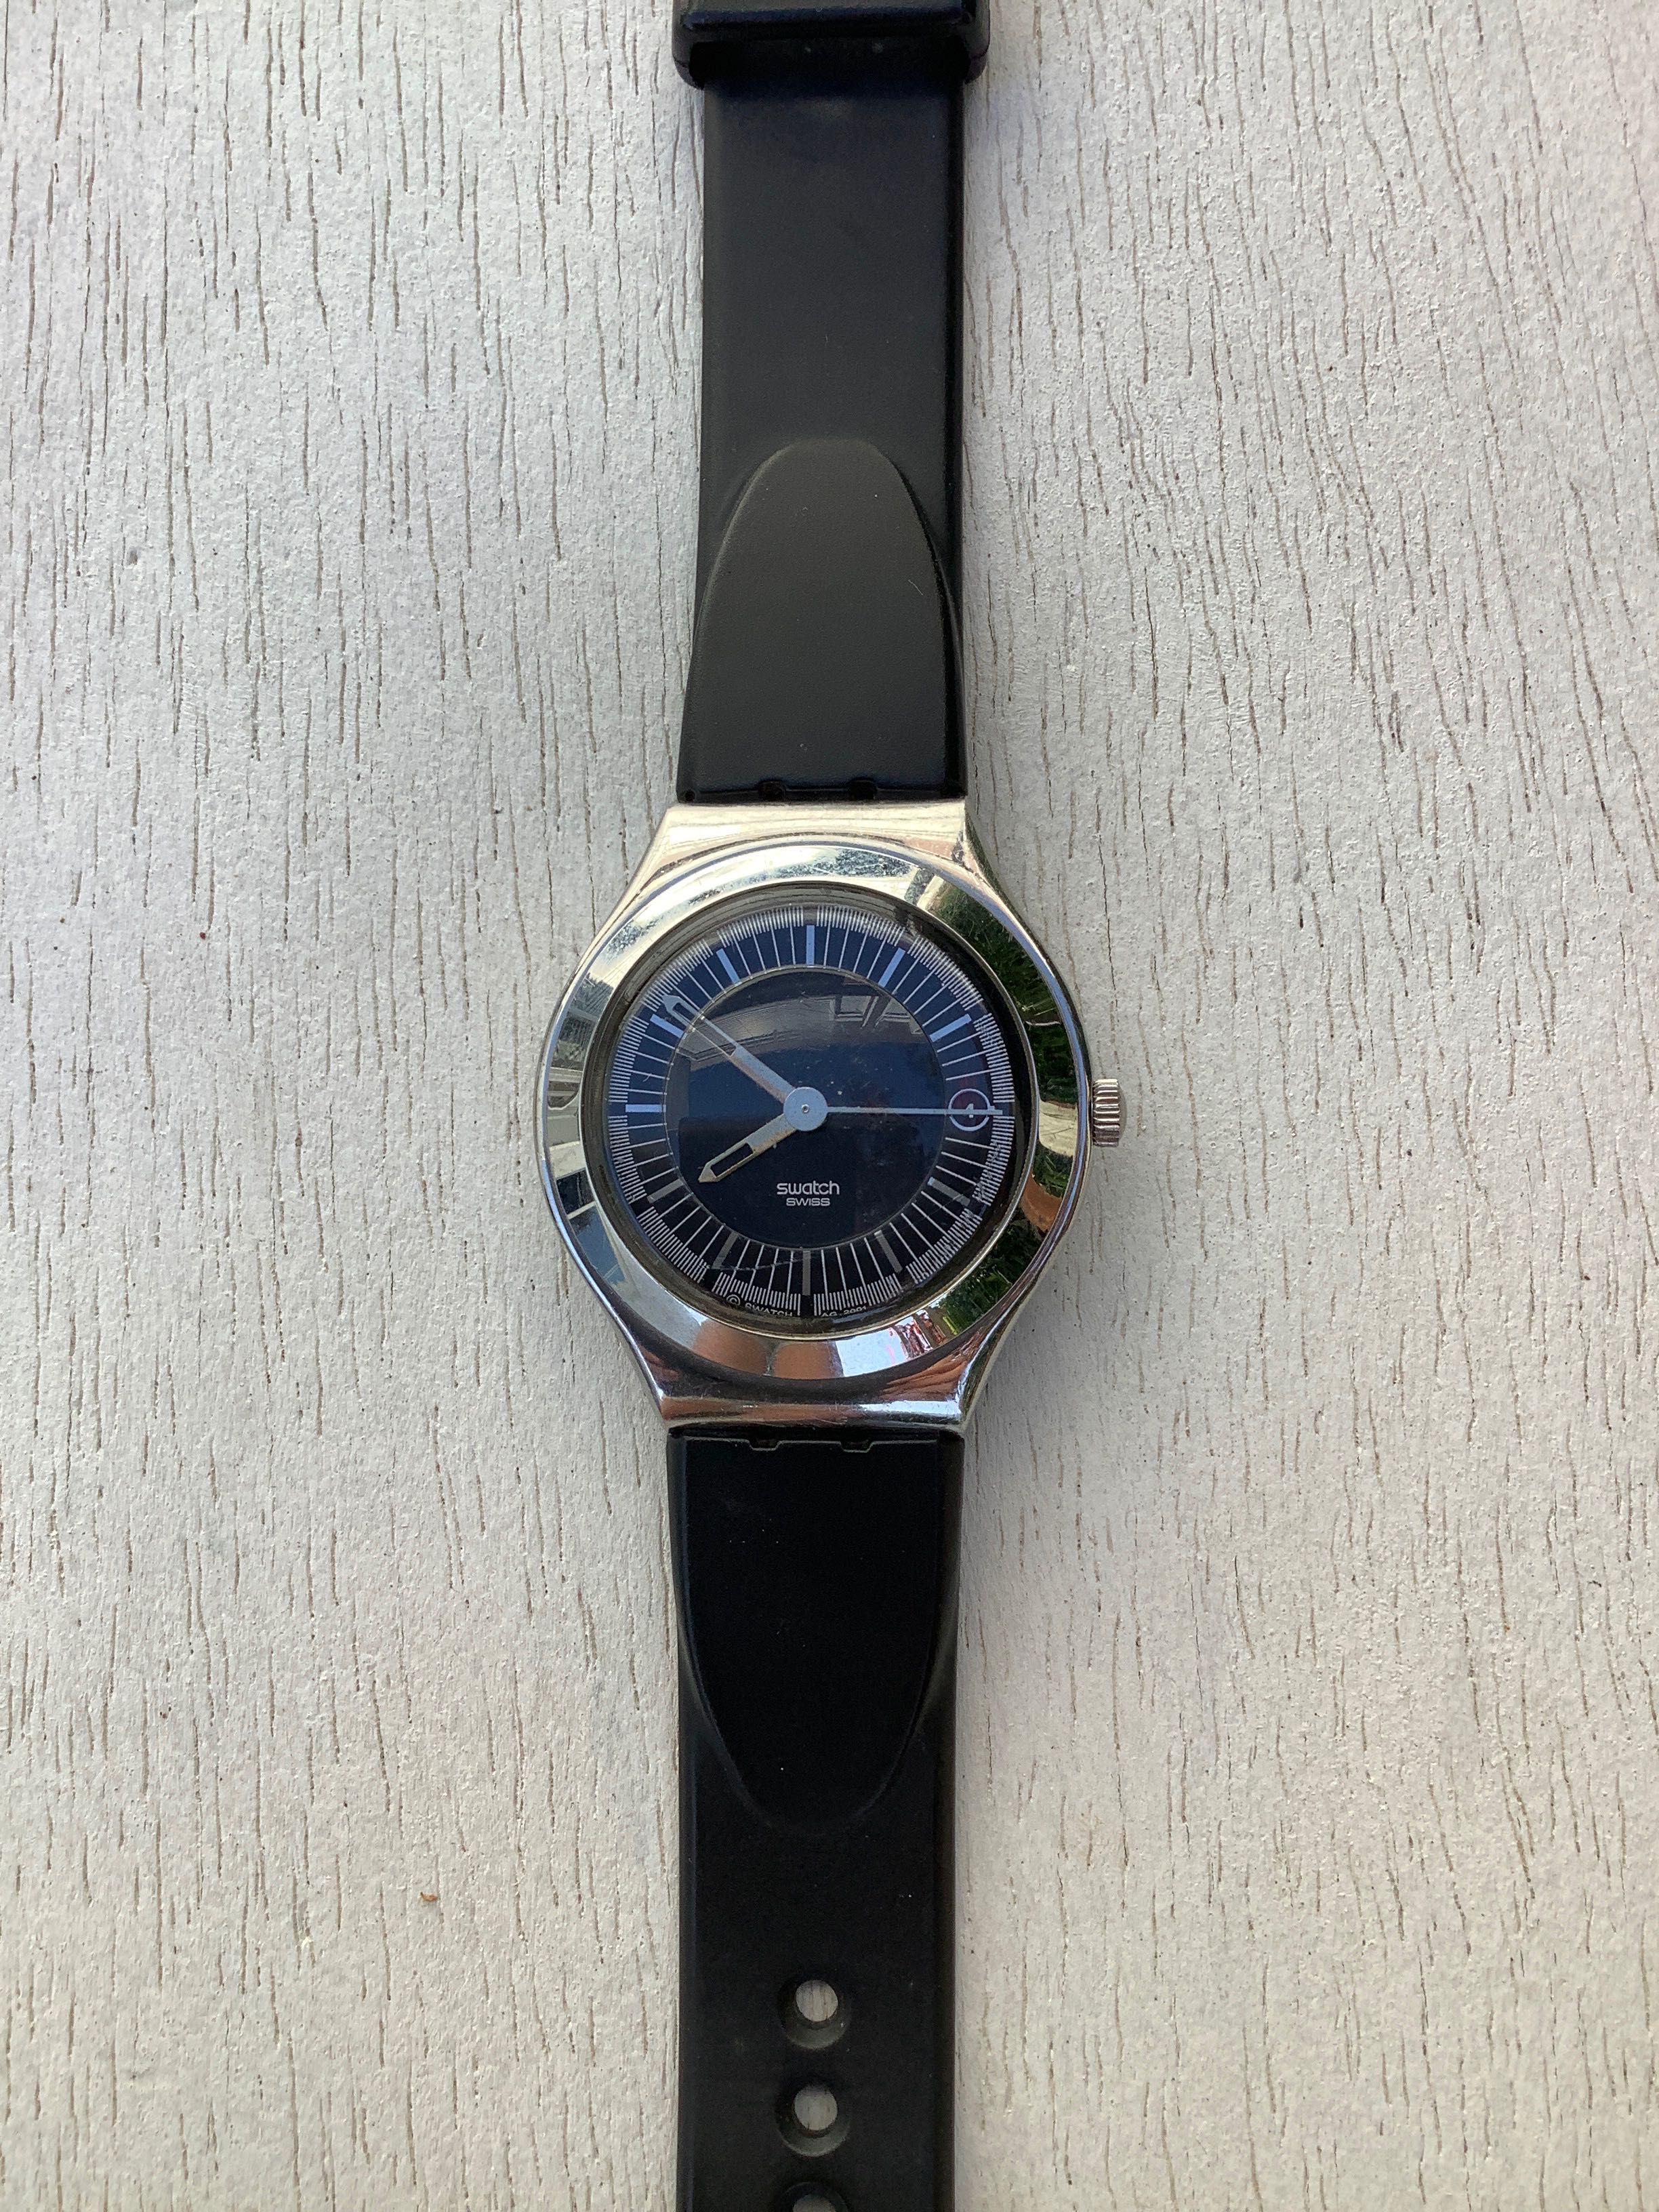 Relógio Swatch clássico